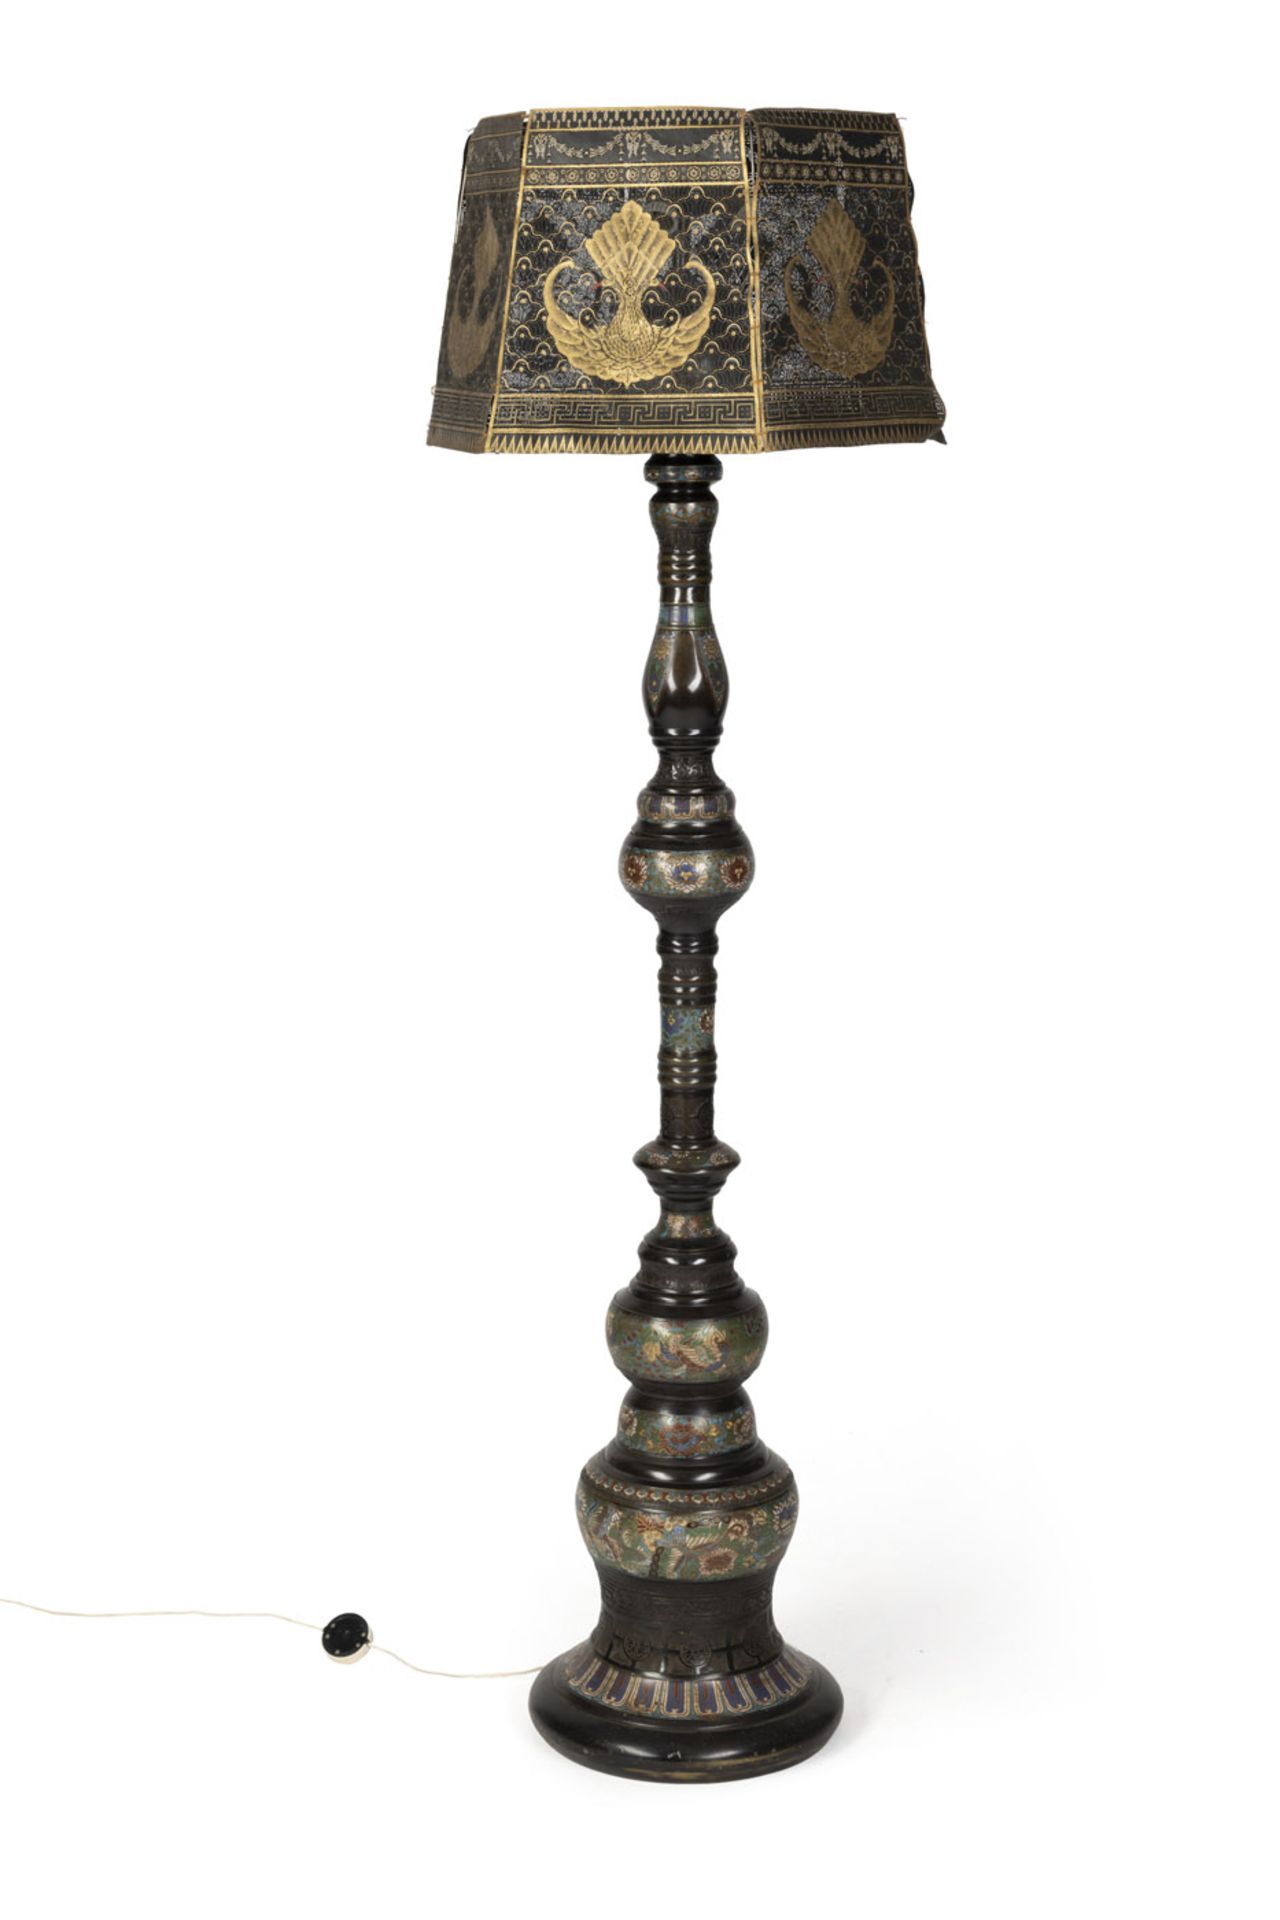 Große Cloisonné-Säule als Lampenfuß mit Vogel- und Blumendekor, dazu durchbrochener Lampenschirm